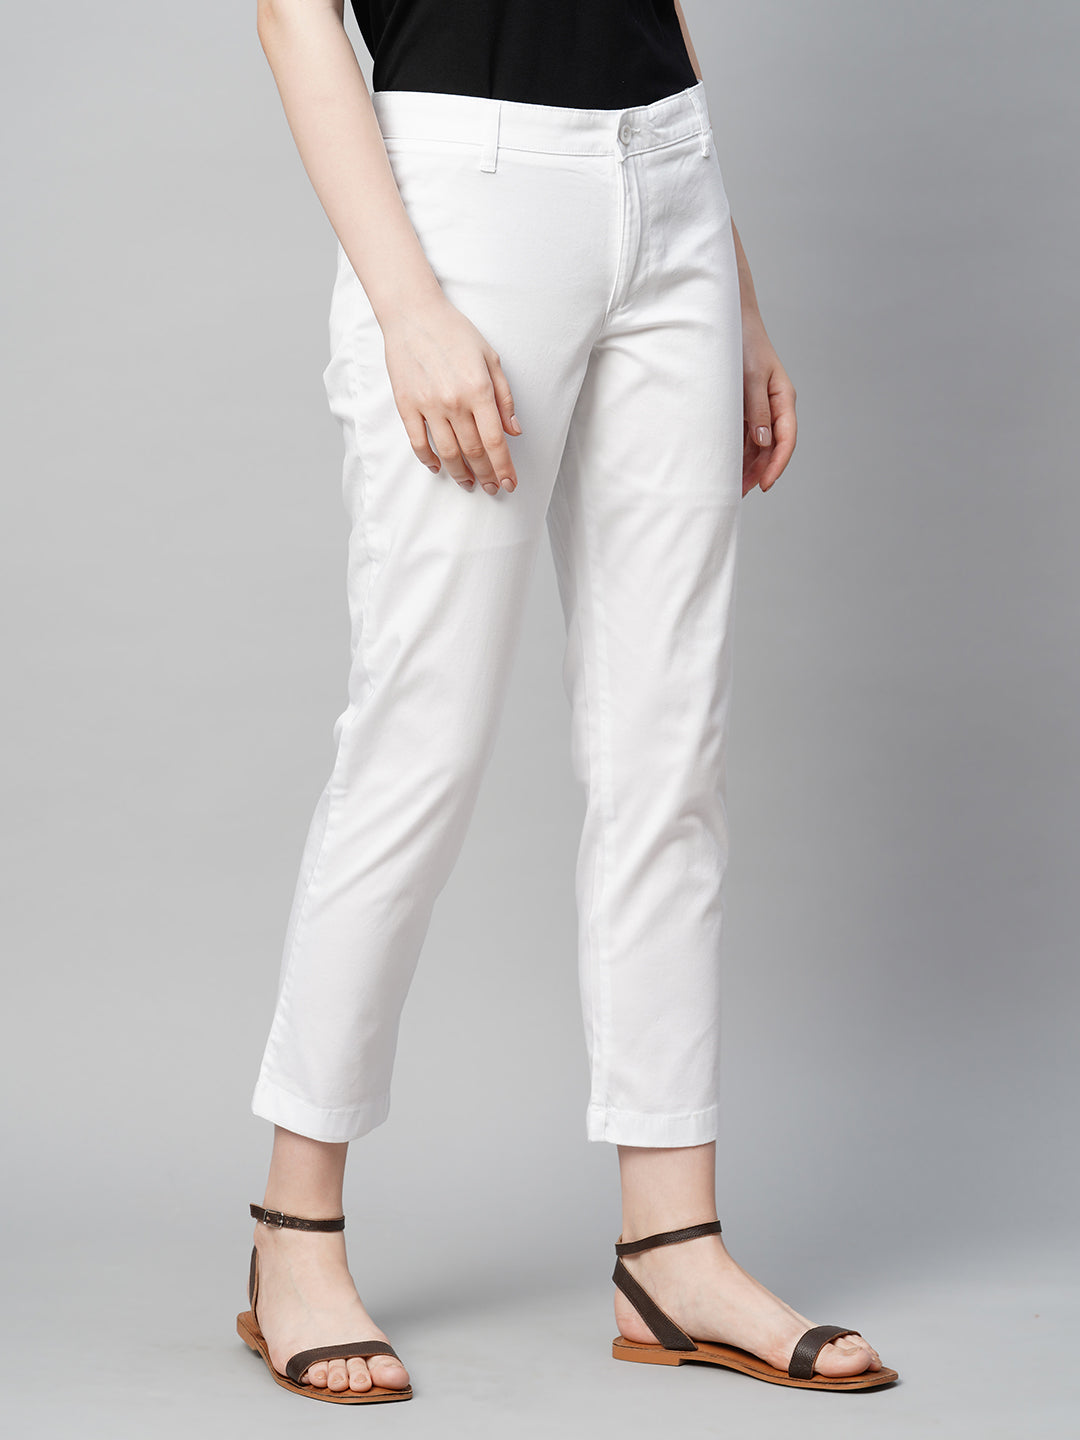 Buy Women's Cotton Elastane Semi-Formal Wear Regular Fit Pants